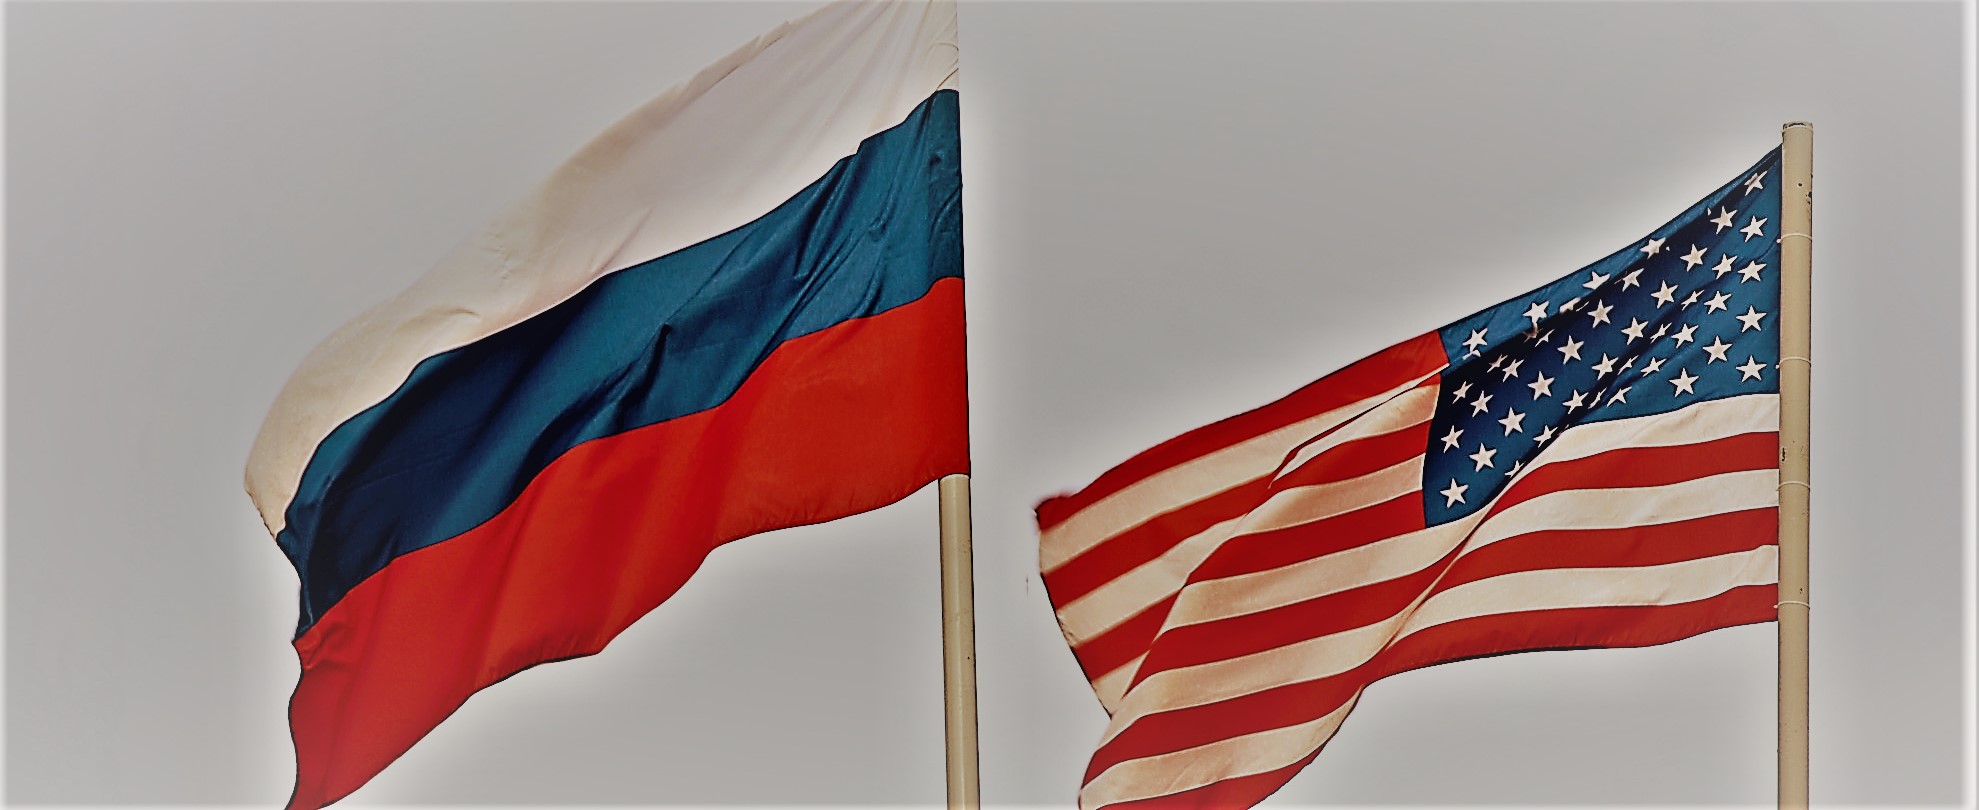 Νέες κυρώσεις σε βάρος ρωσικών επιχειρήσεων και πολιτών επέβαλε η Ουάσινγκτον